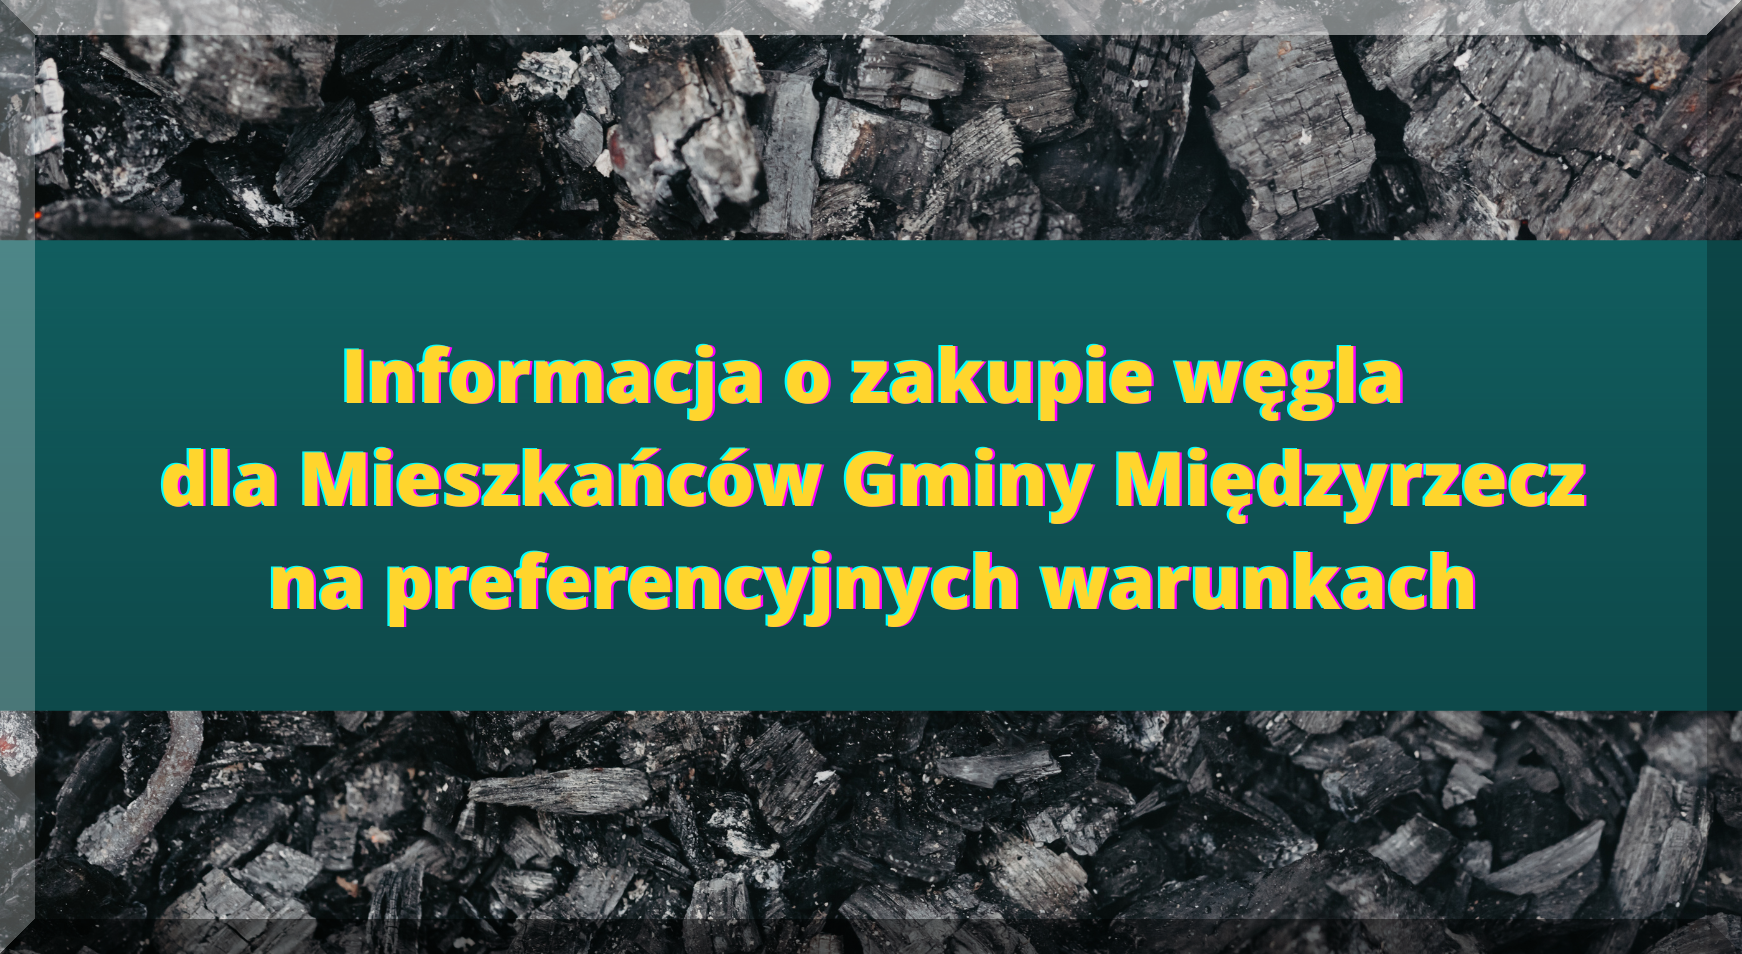 Ilustracja do informacji: Informacja o zakupie węgla dla Mieszkańców Gminy Międzyrzecz 